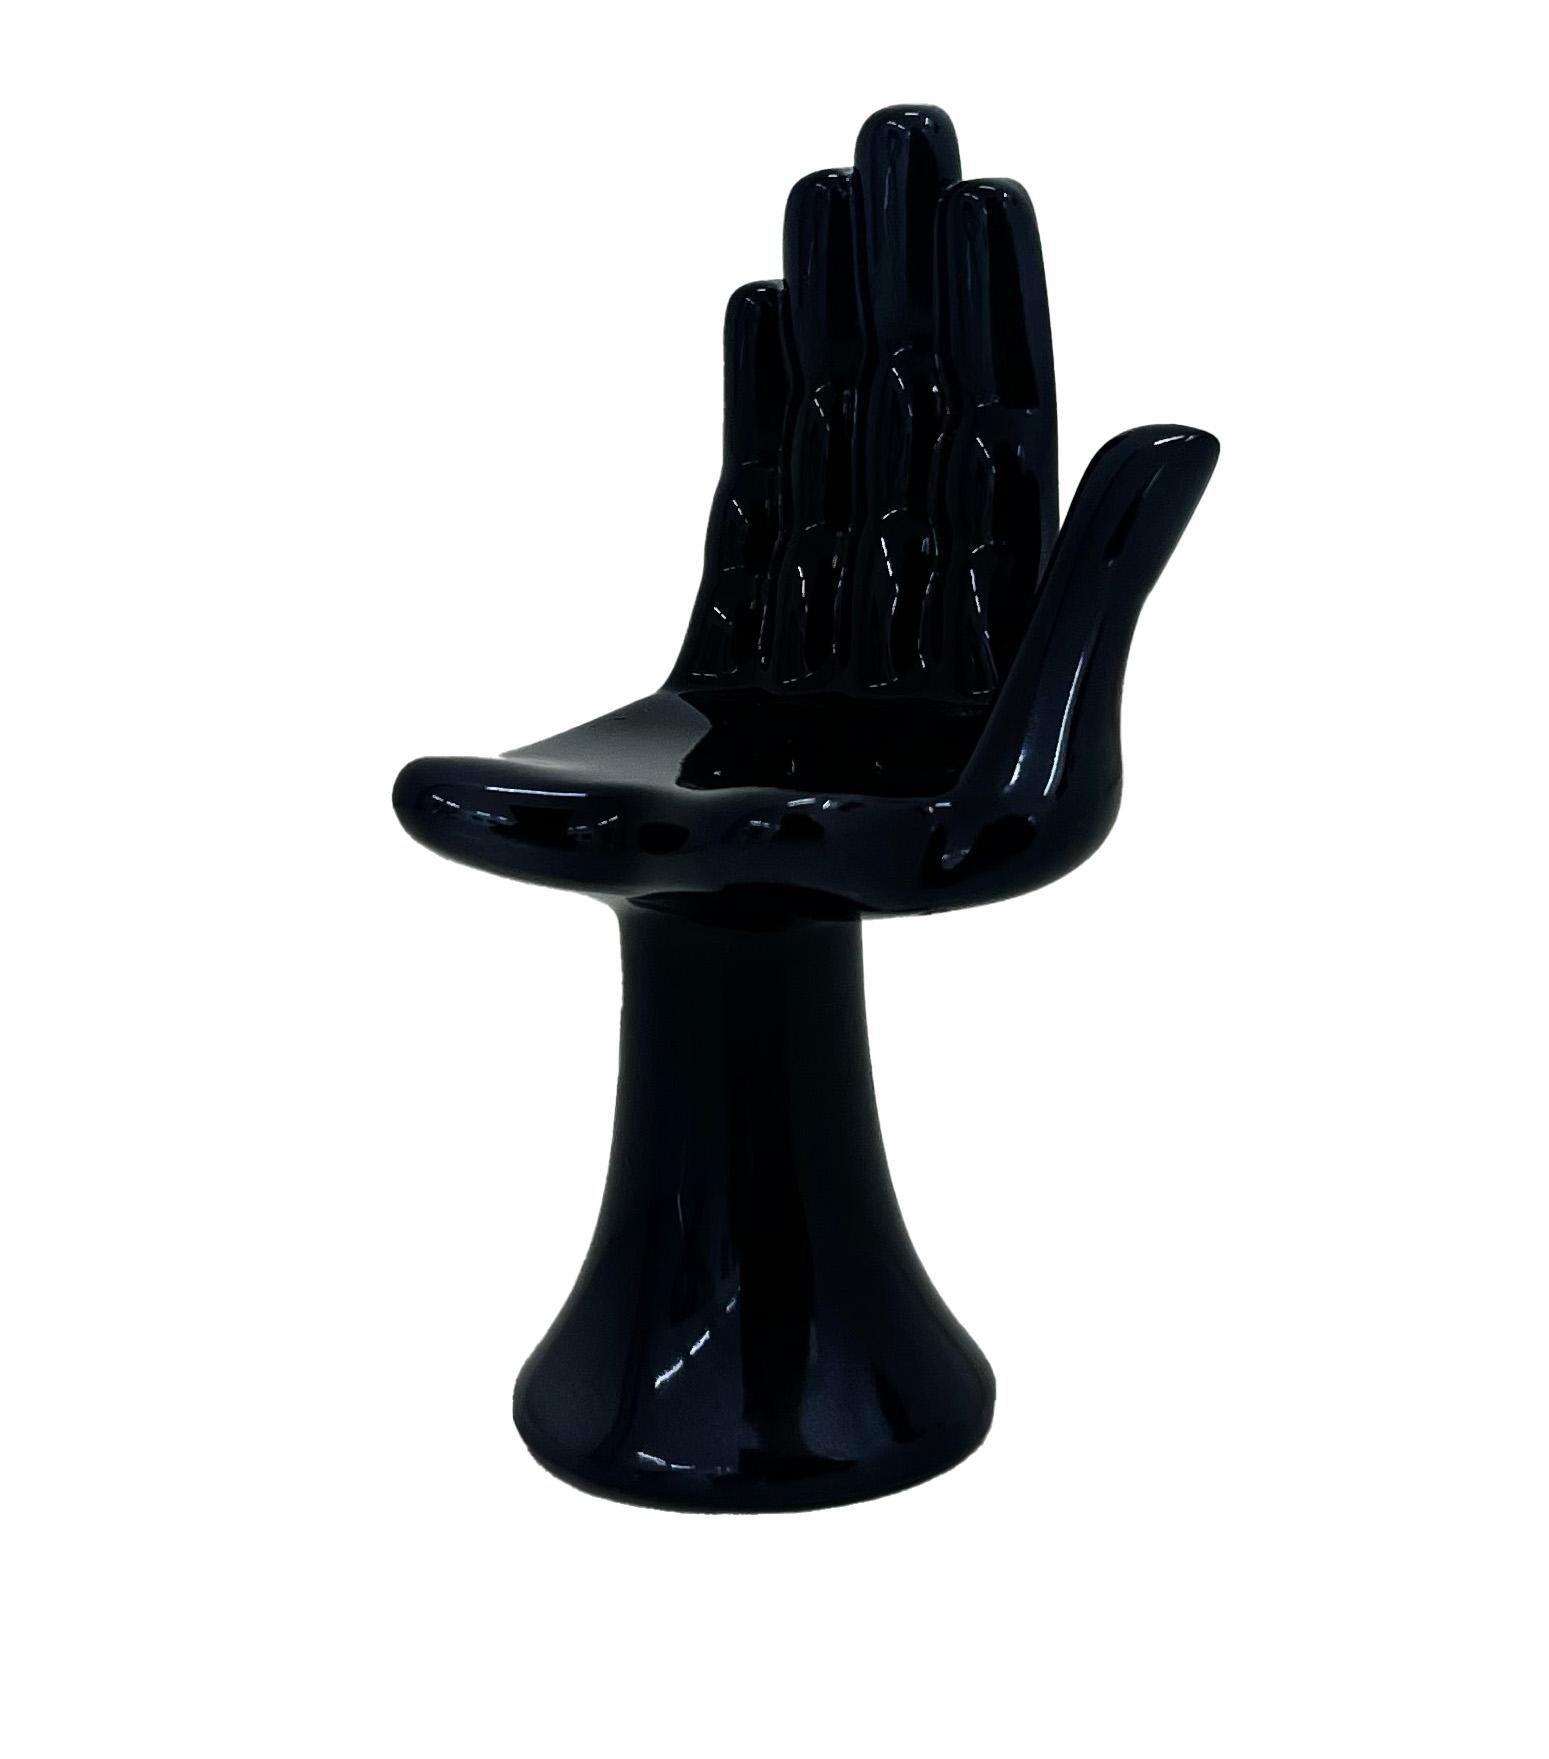 Figurative Sculpture Pedro Friedeberg - "Mano" - Mini version du Hand Chair de Friedeberg, sculpture, colorée, noire